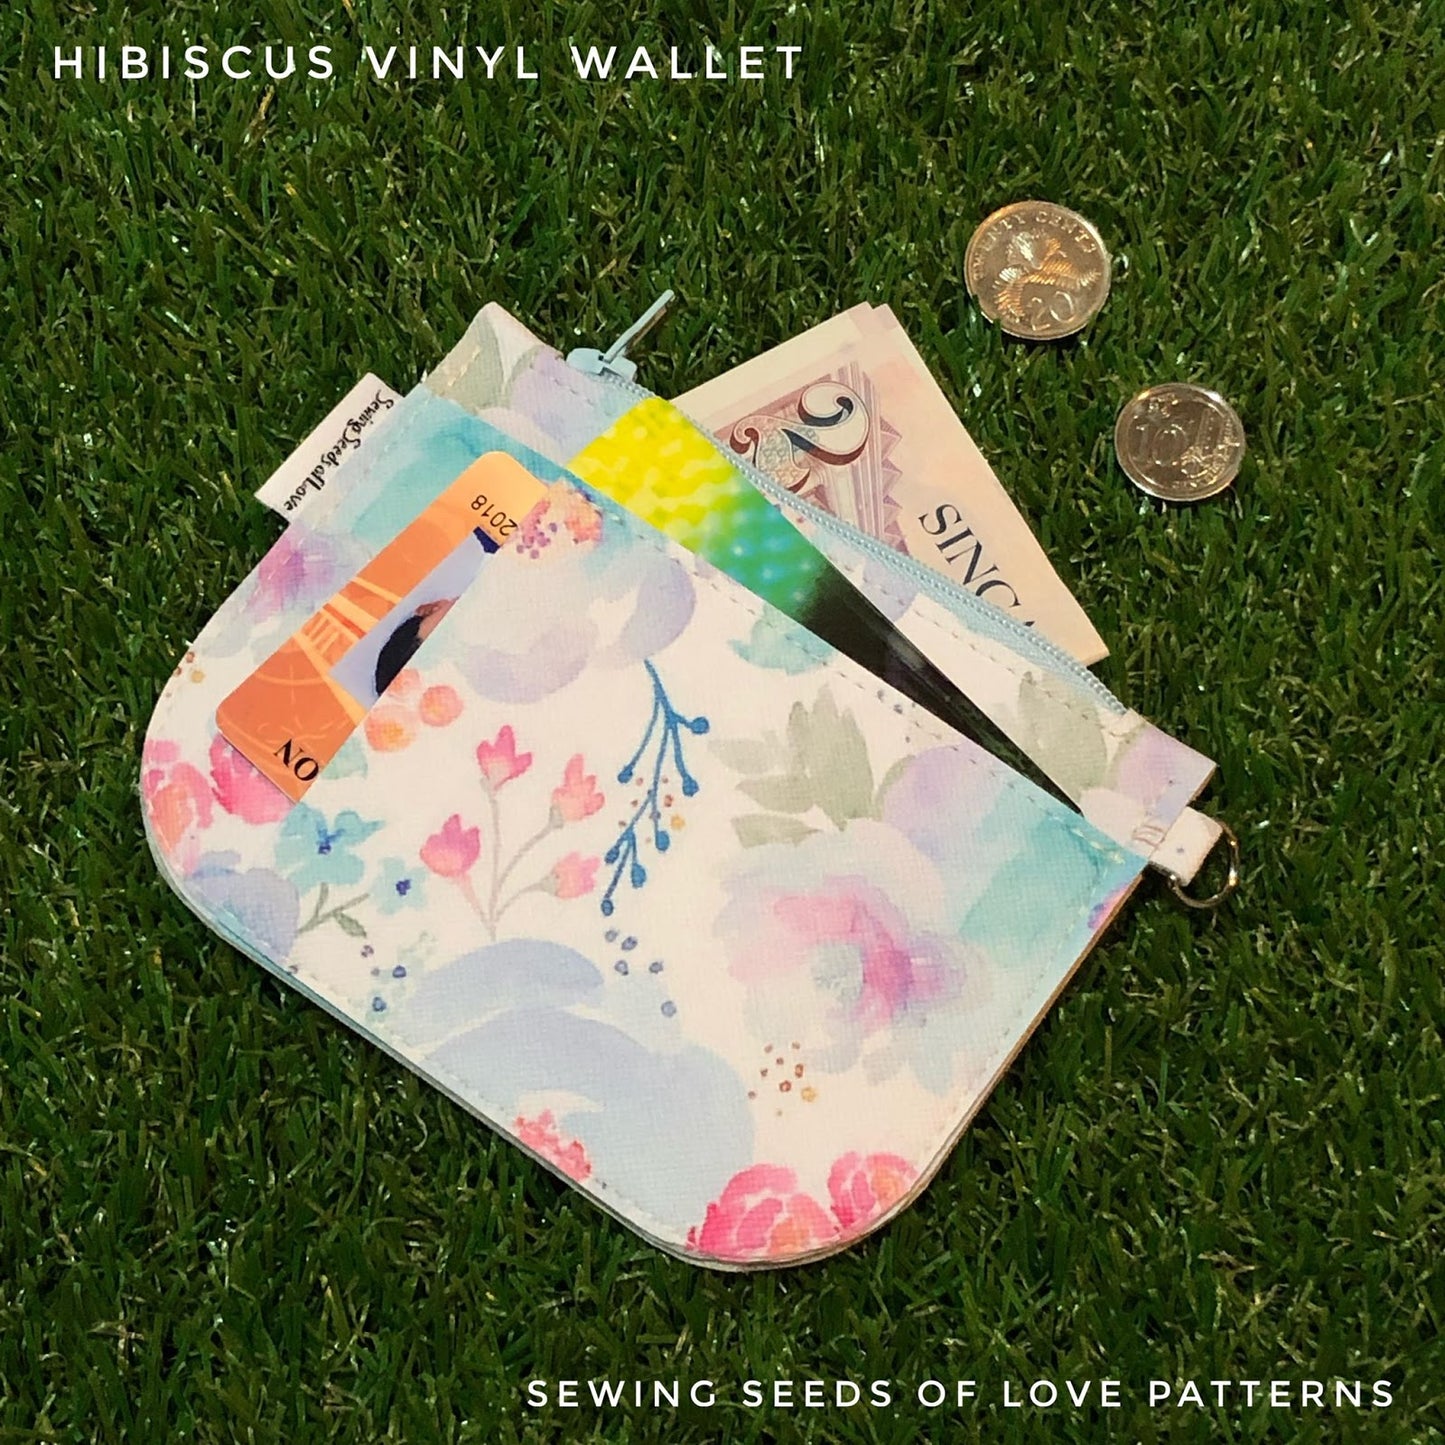 Seedlings 101 - Hibiscus Wallet Workshop